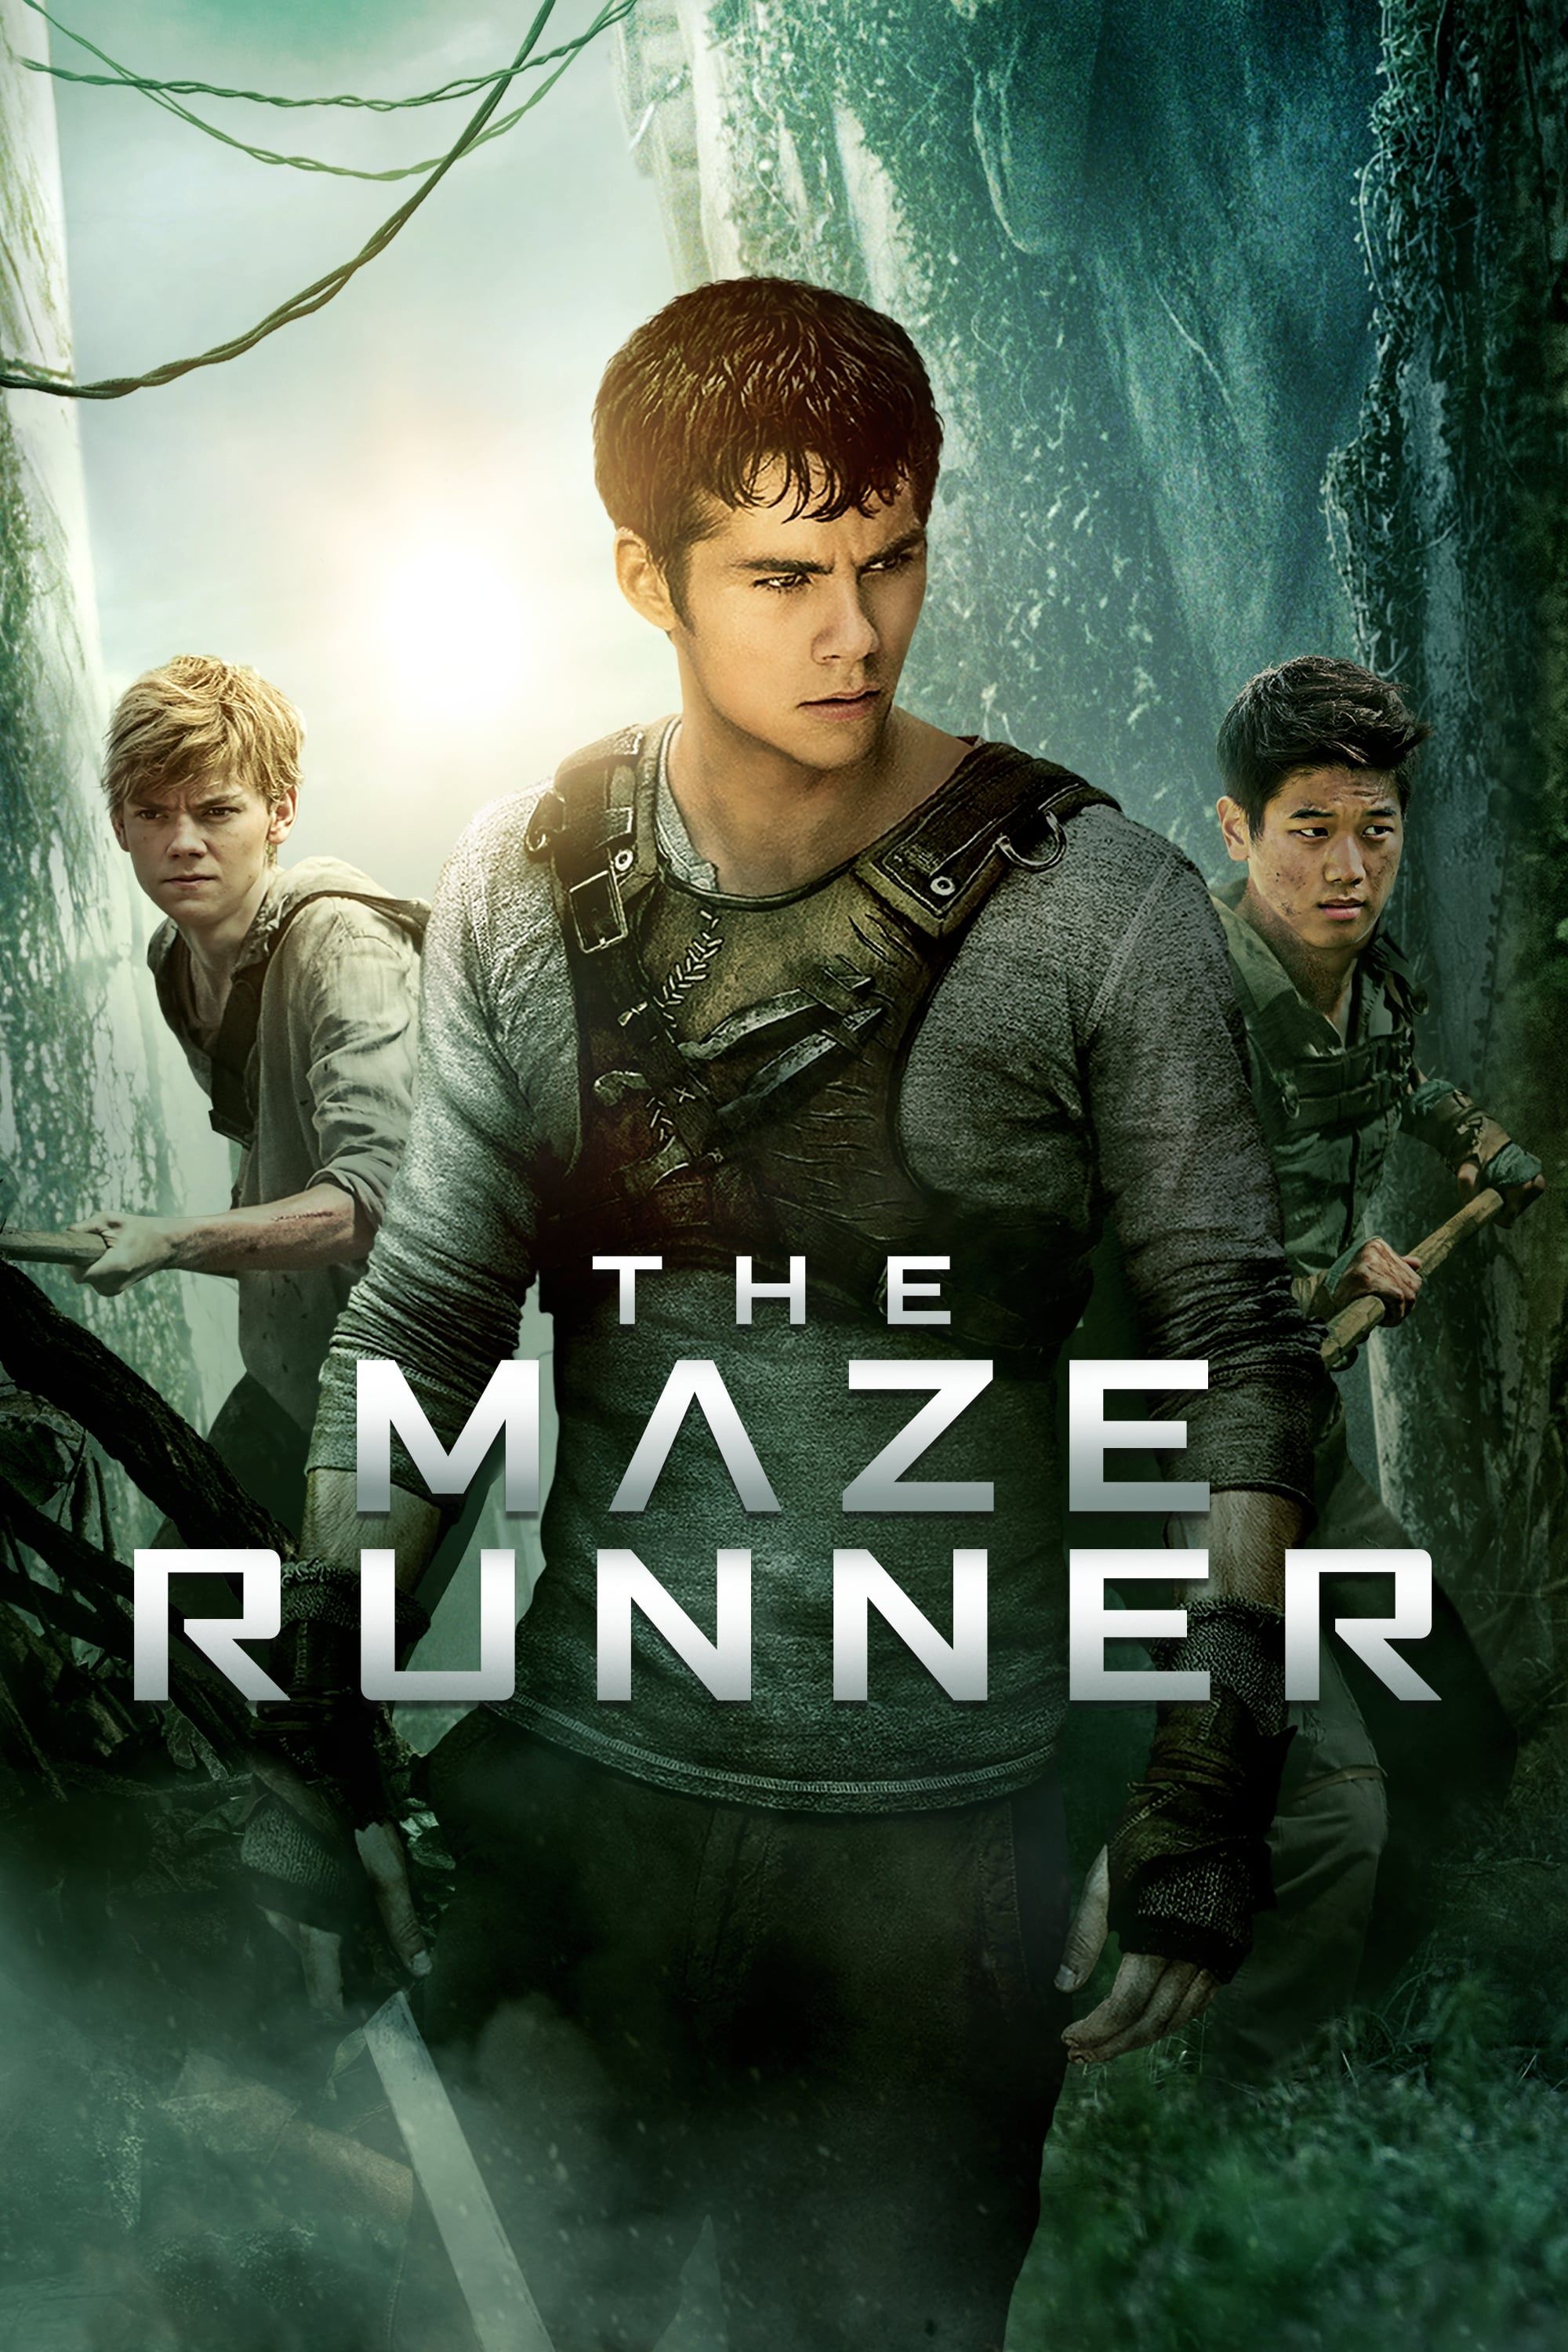 Weekend Box Office: Maze Runner Sequel Beats Black Mass